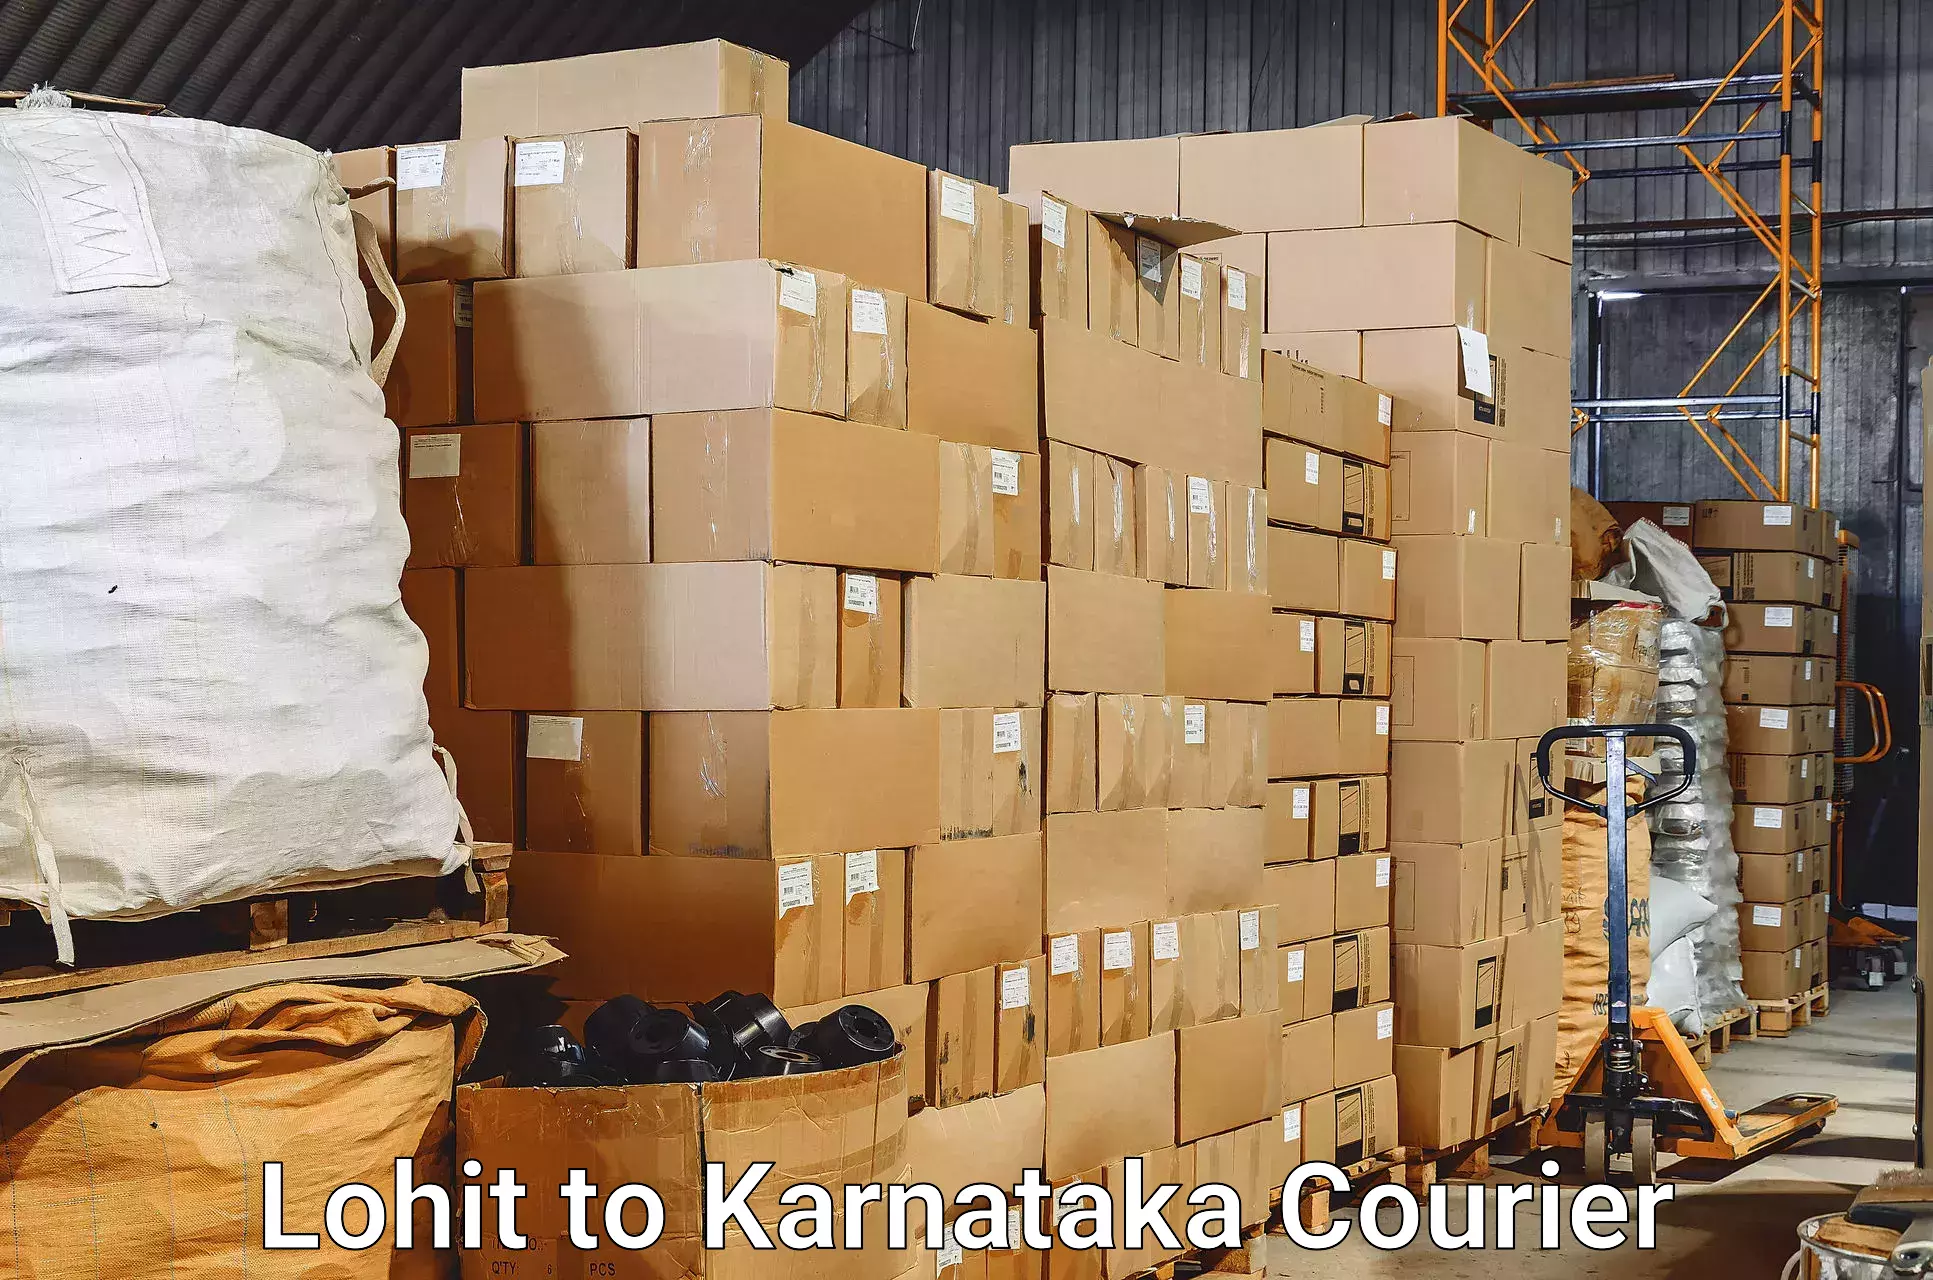 Corporate baggage transport Lohit to Karnataka